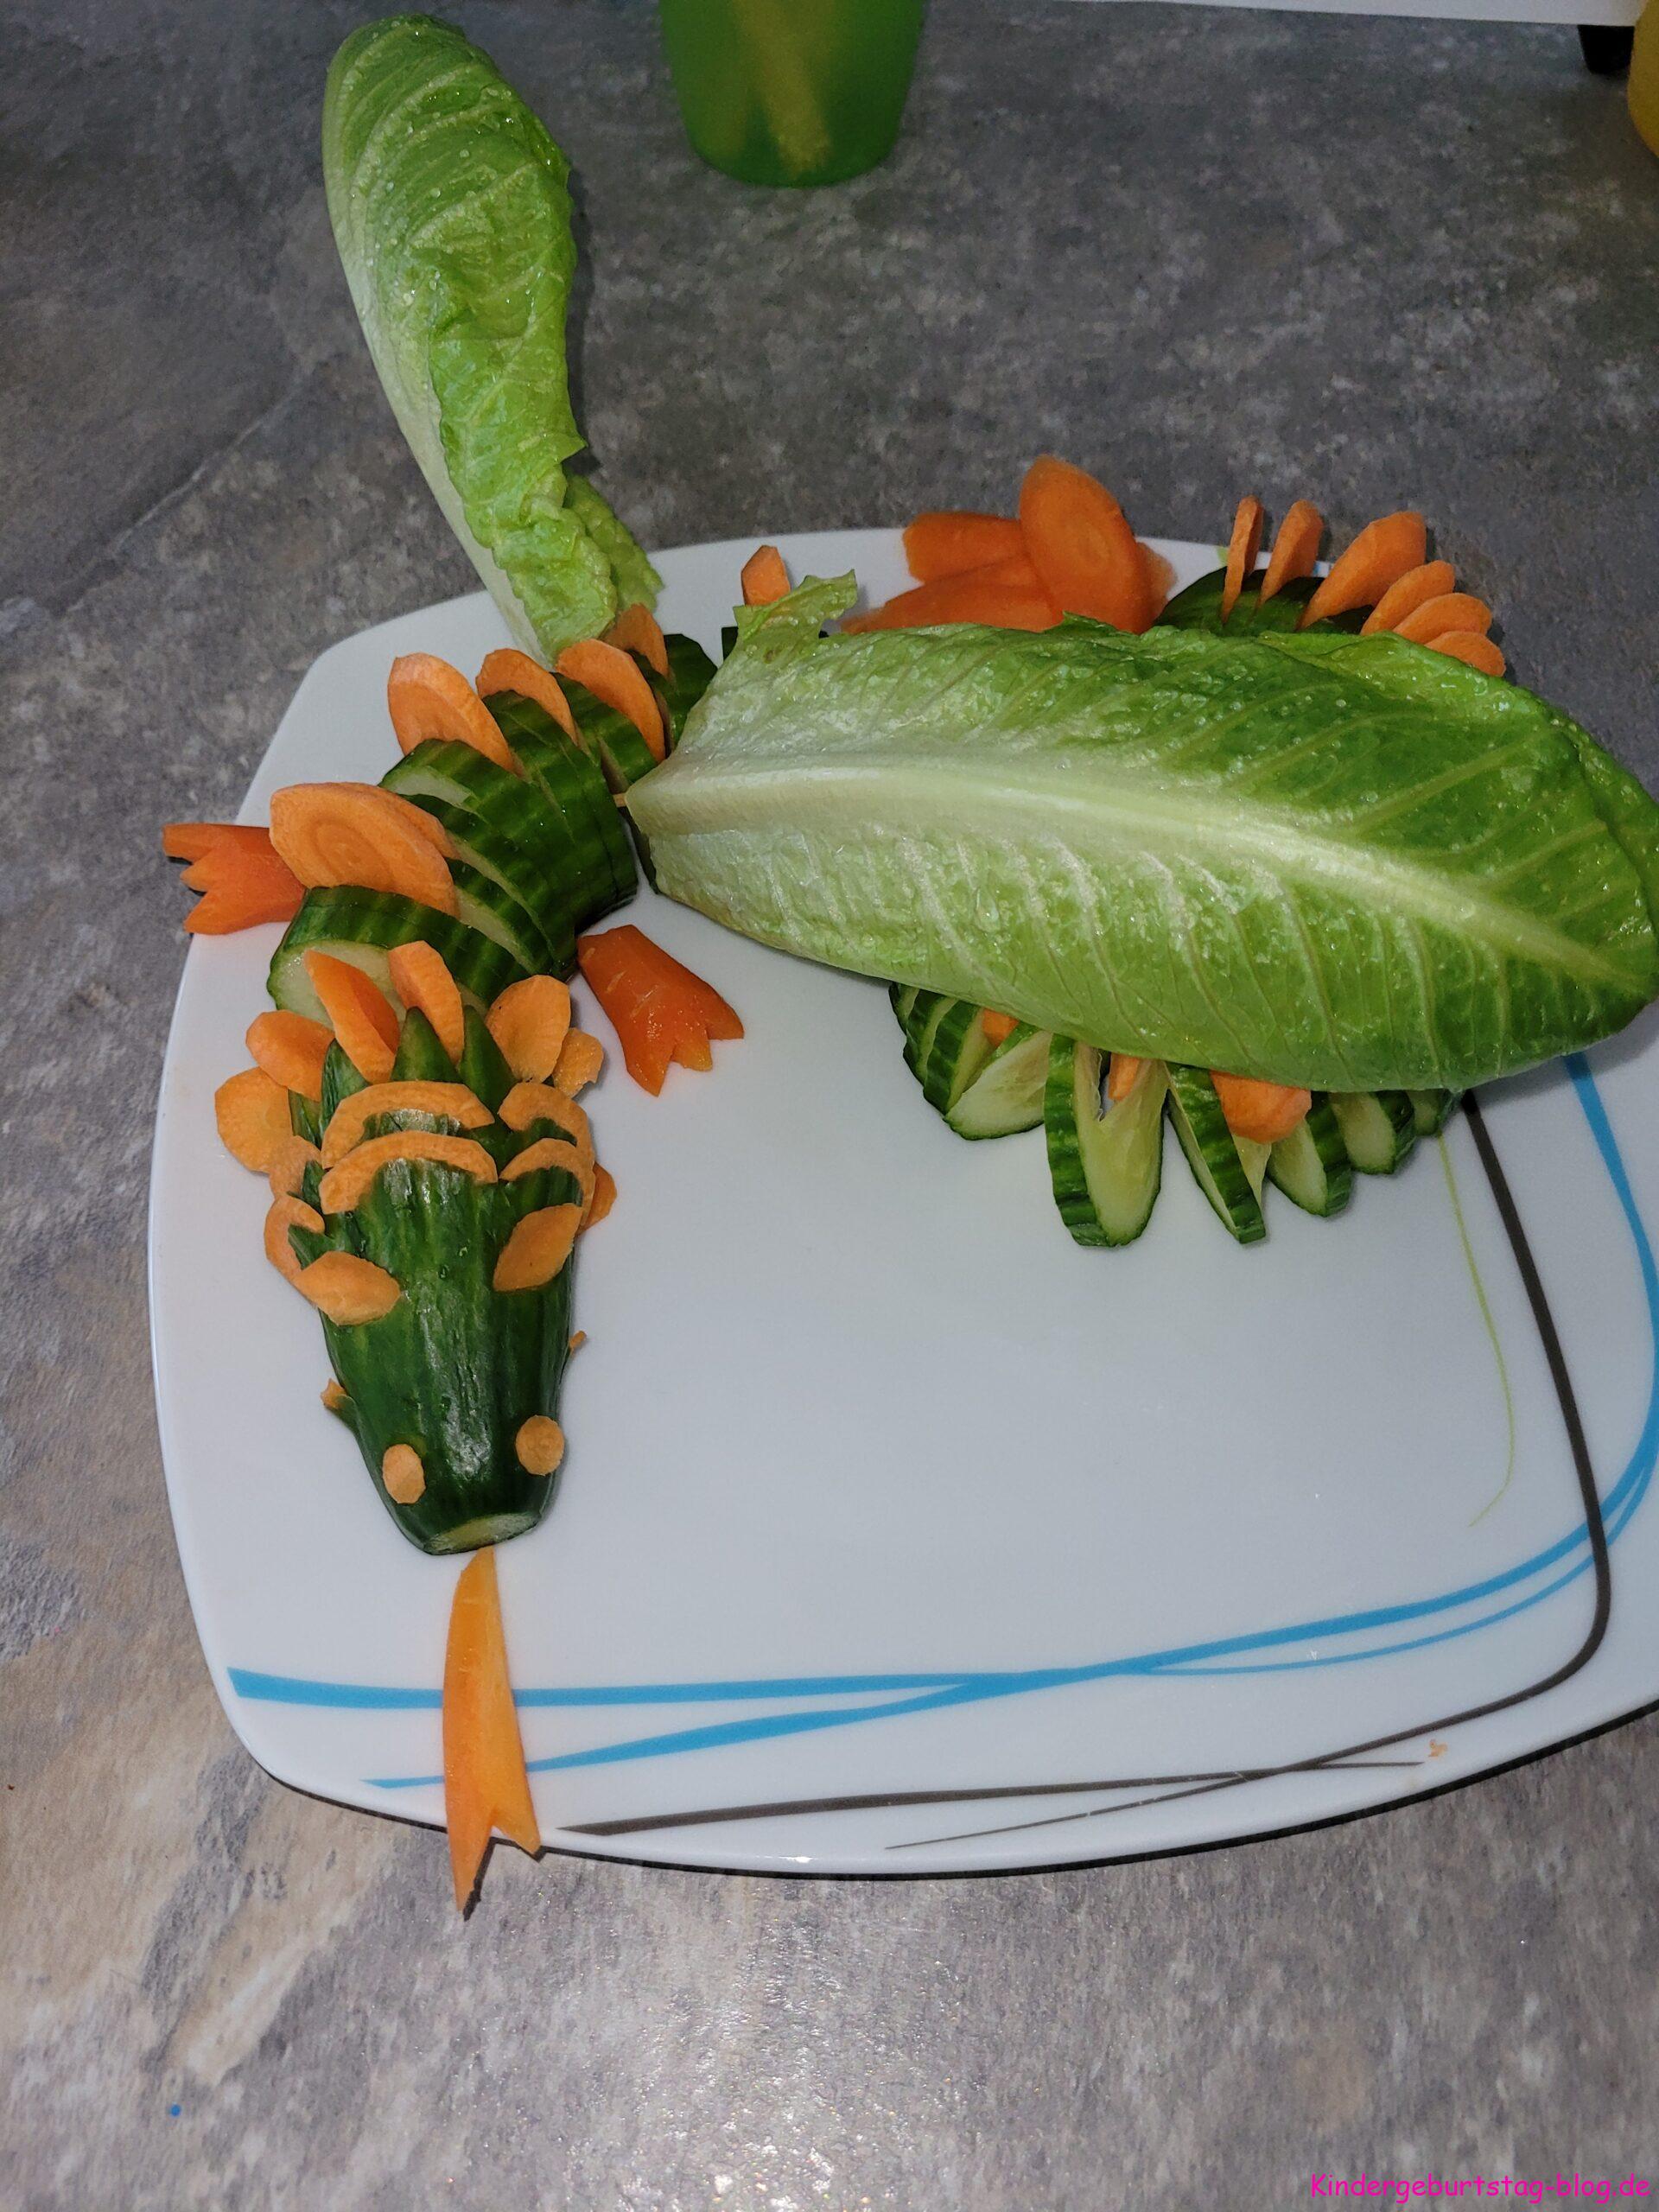 Ideen für Obst- und Gemüseplatten für Kinderfeste - Kindergeburtstag-blog